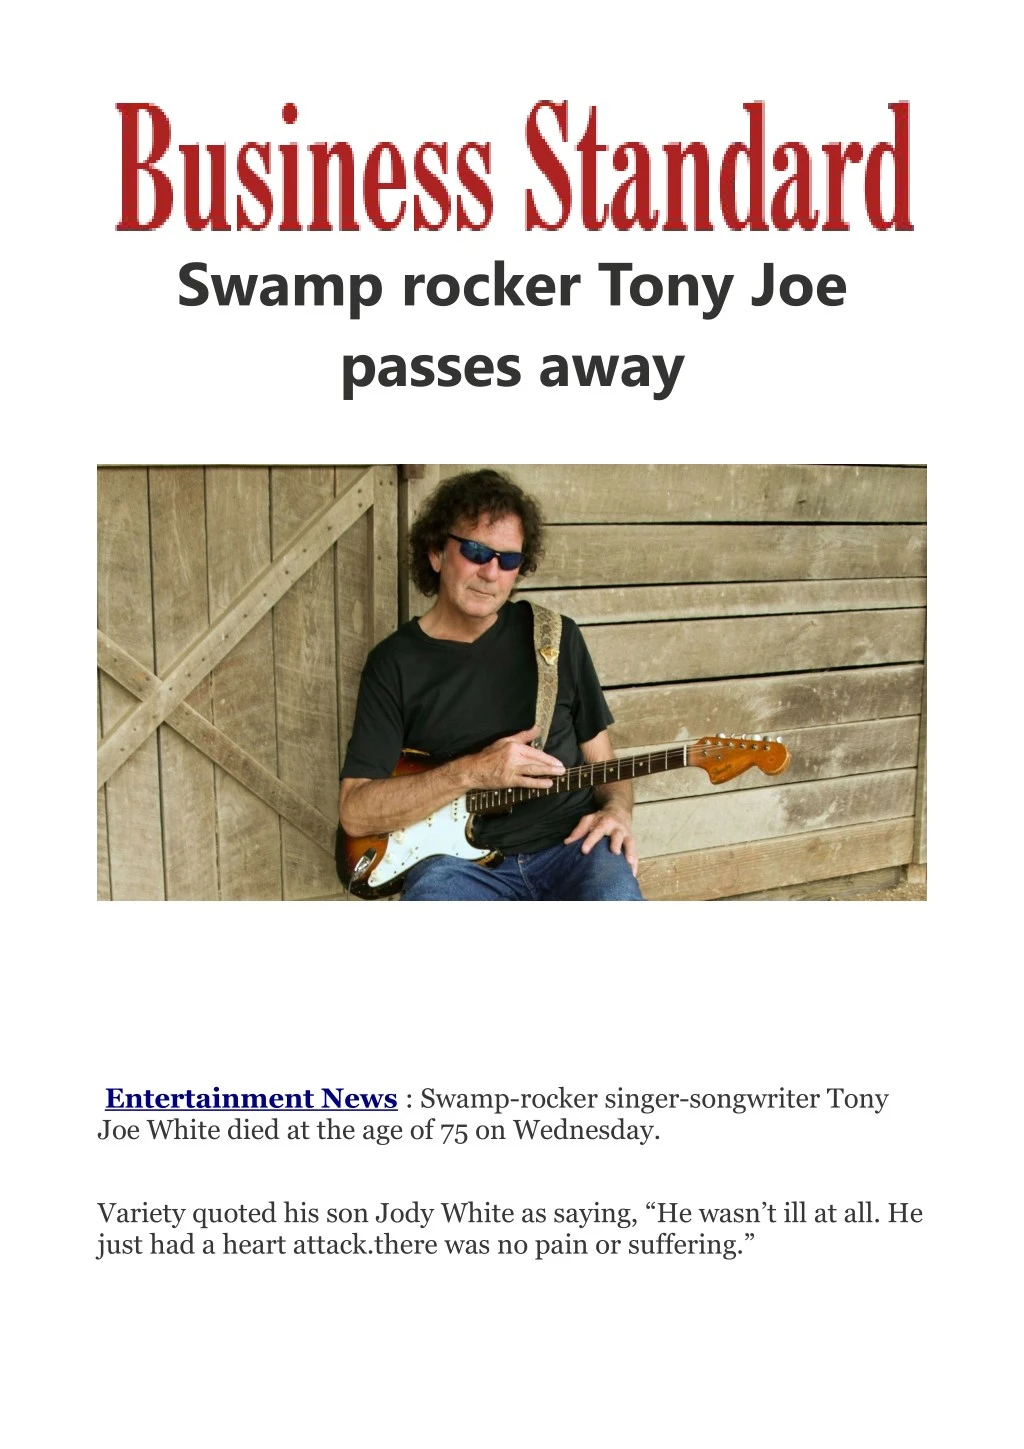 swamp rocker tony joe passes away